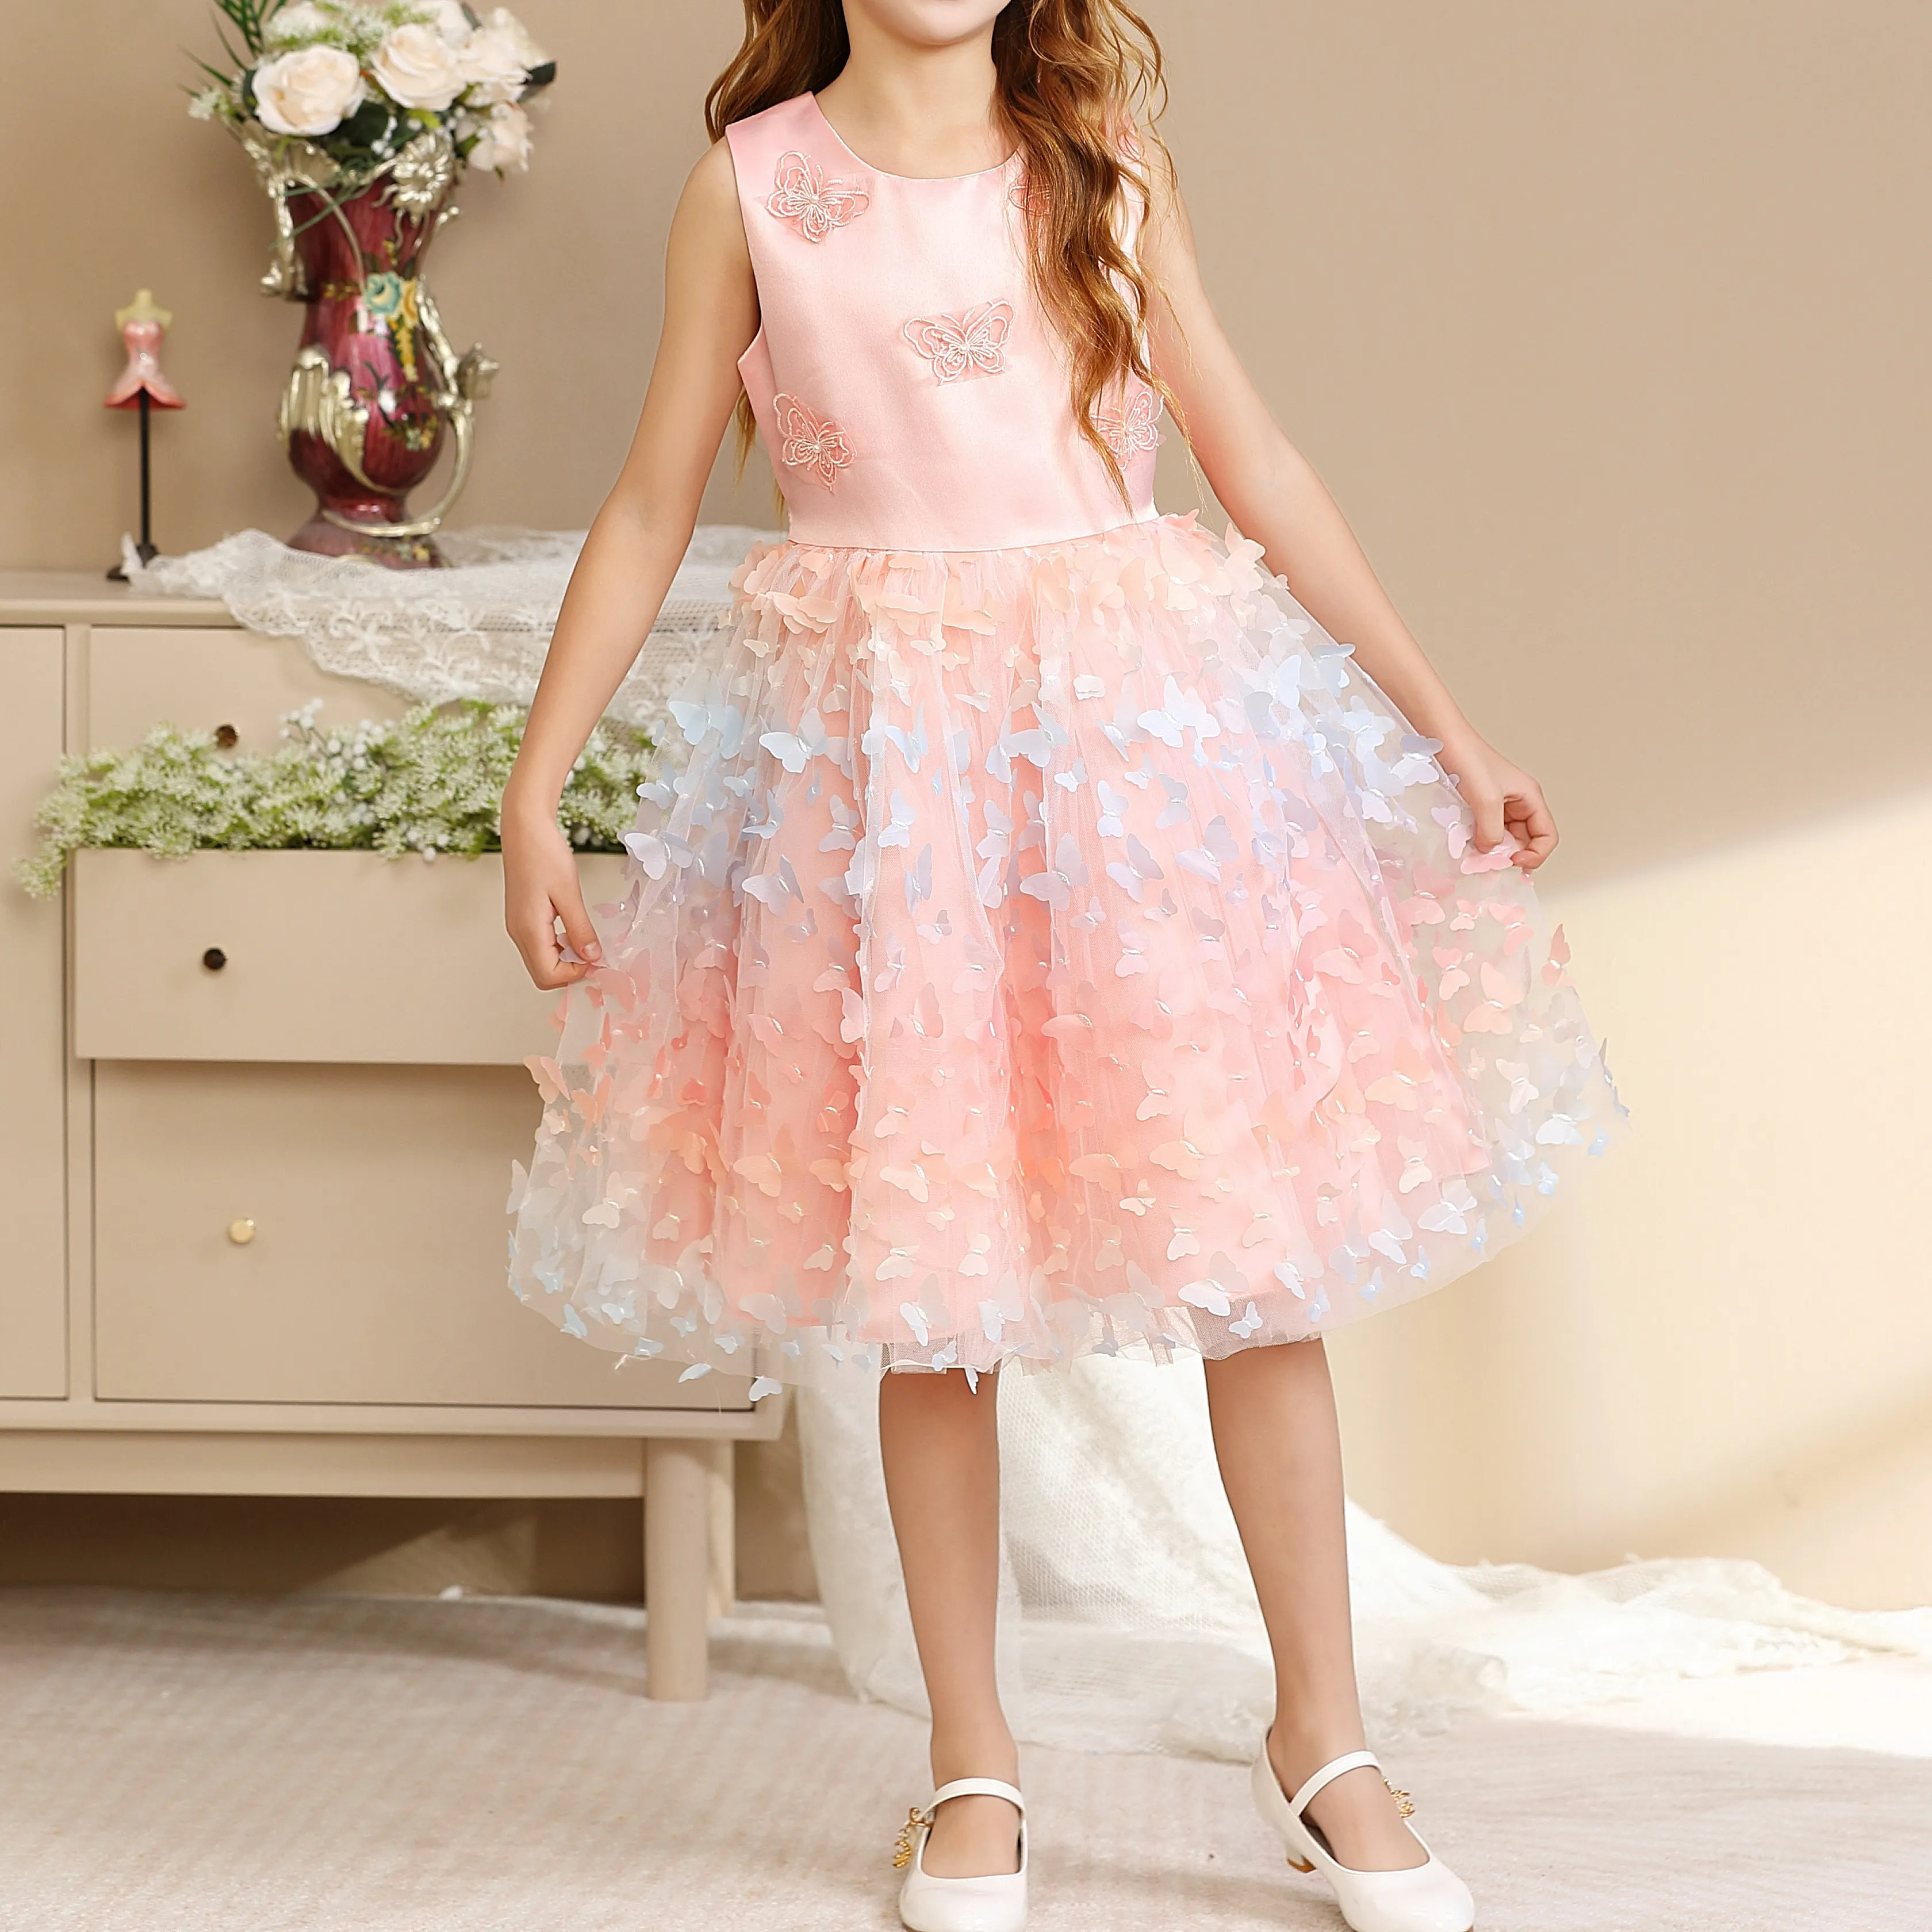 Produsen Pakaian Kustom Anak-anak Mesh Merah Muda Bentuk Gaun Putri untuk Anak Perempuan Gaun Pesta Anak-anak Mewah Gaun Pengantin Kupu-kupu